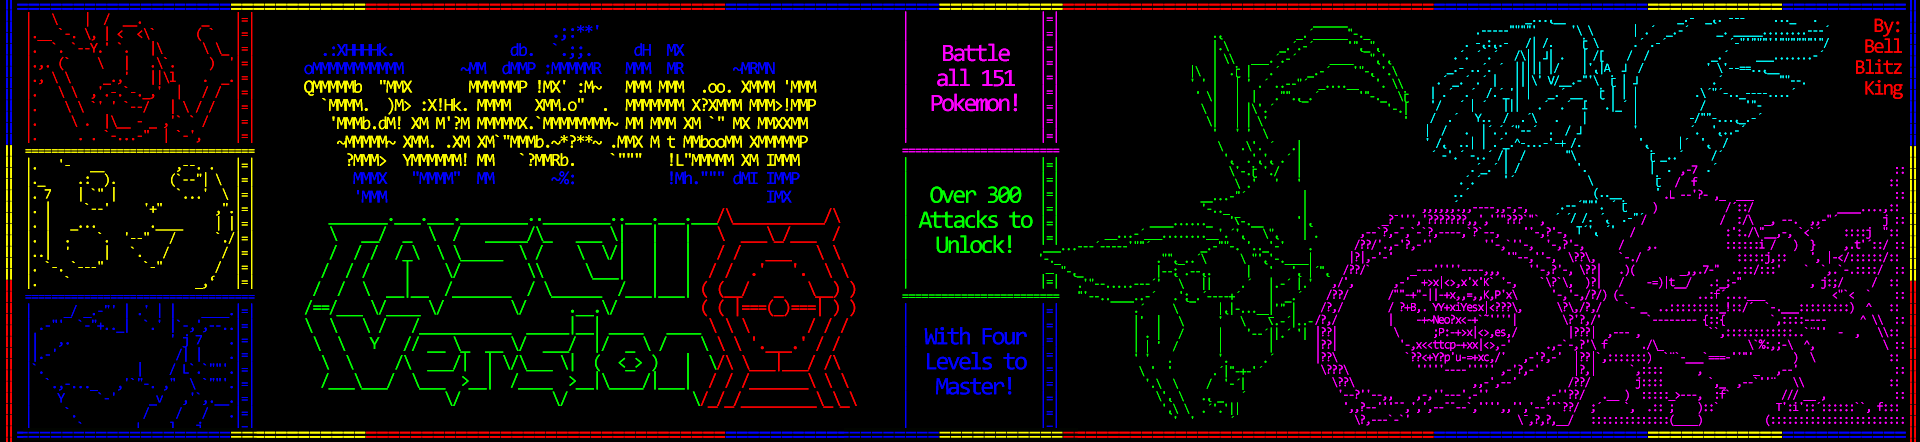 Pokemon ASCII Version CMD Battle Game!